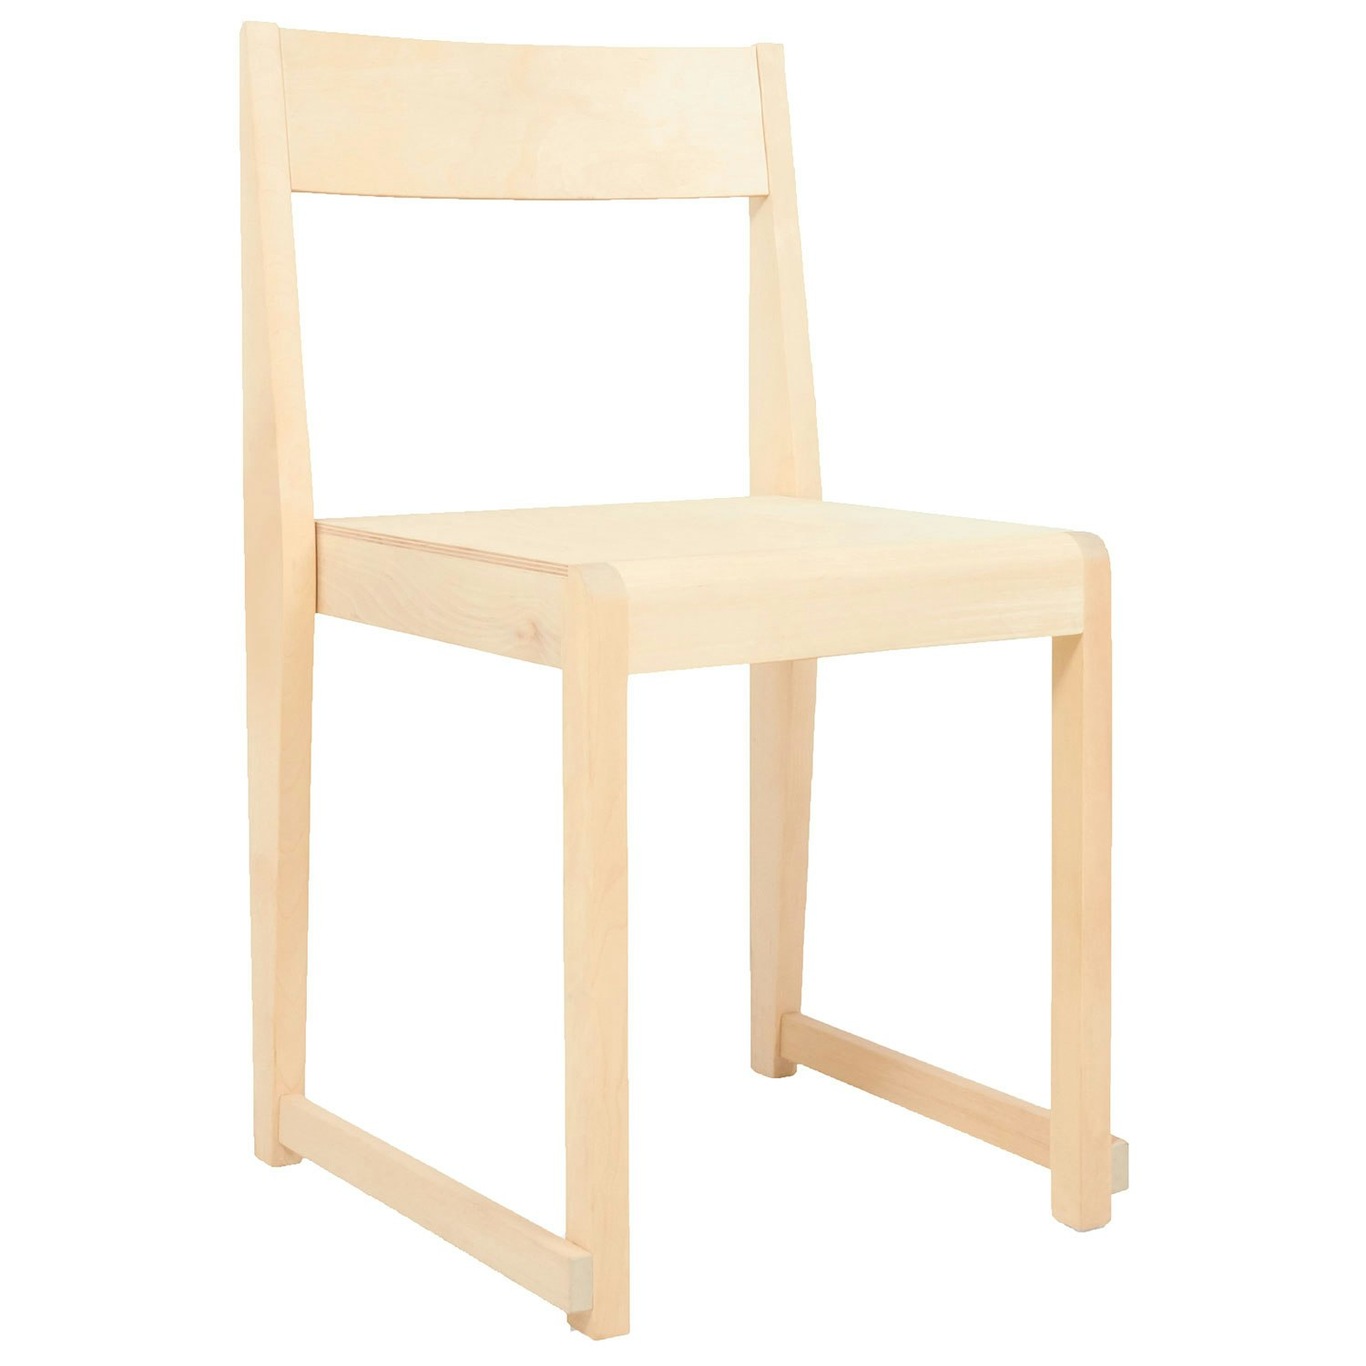 Chair 01 Chair, Natural